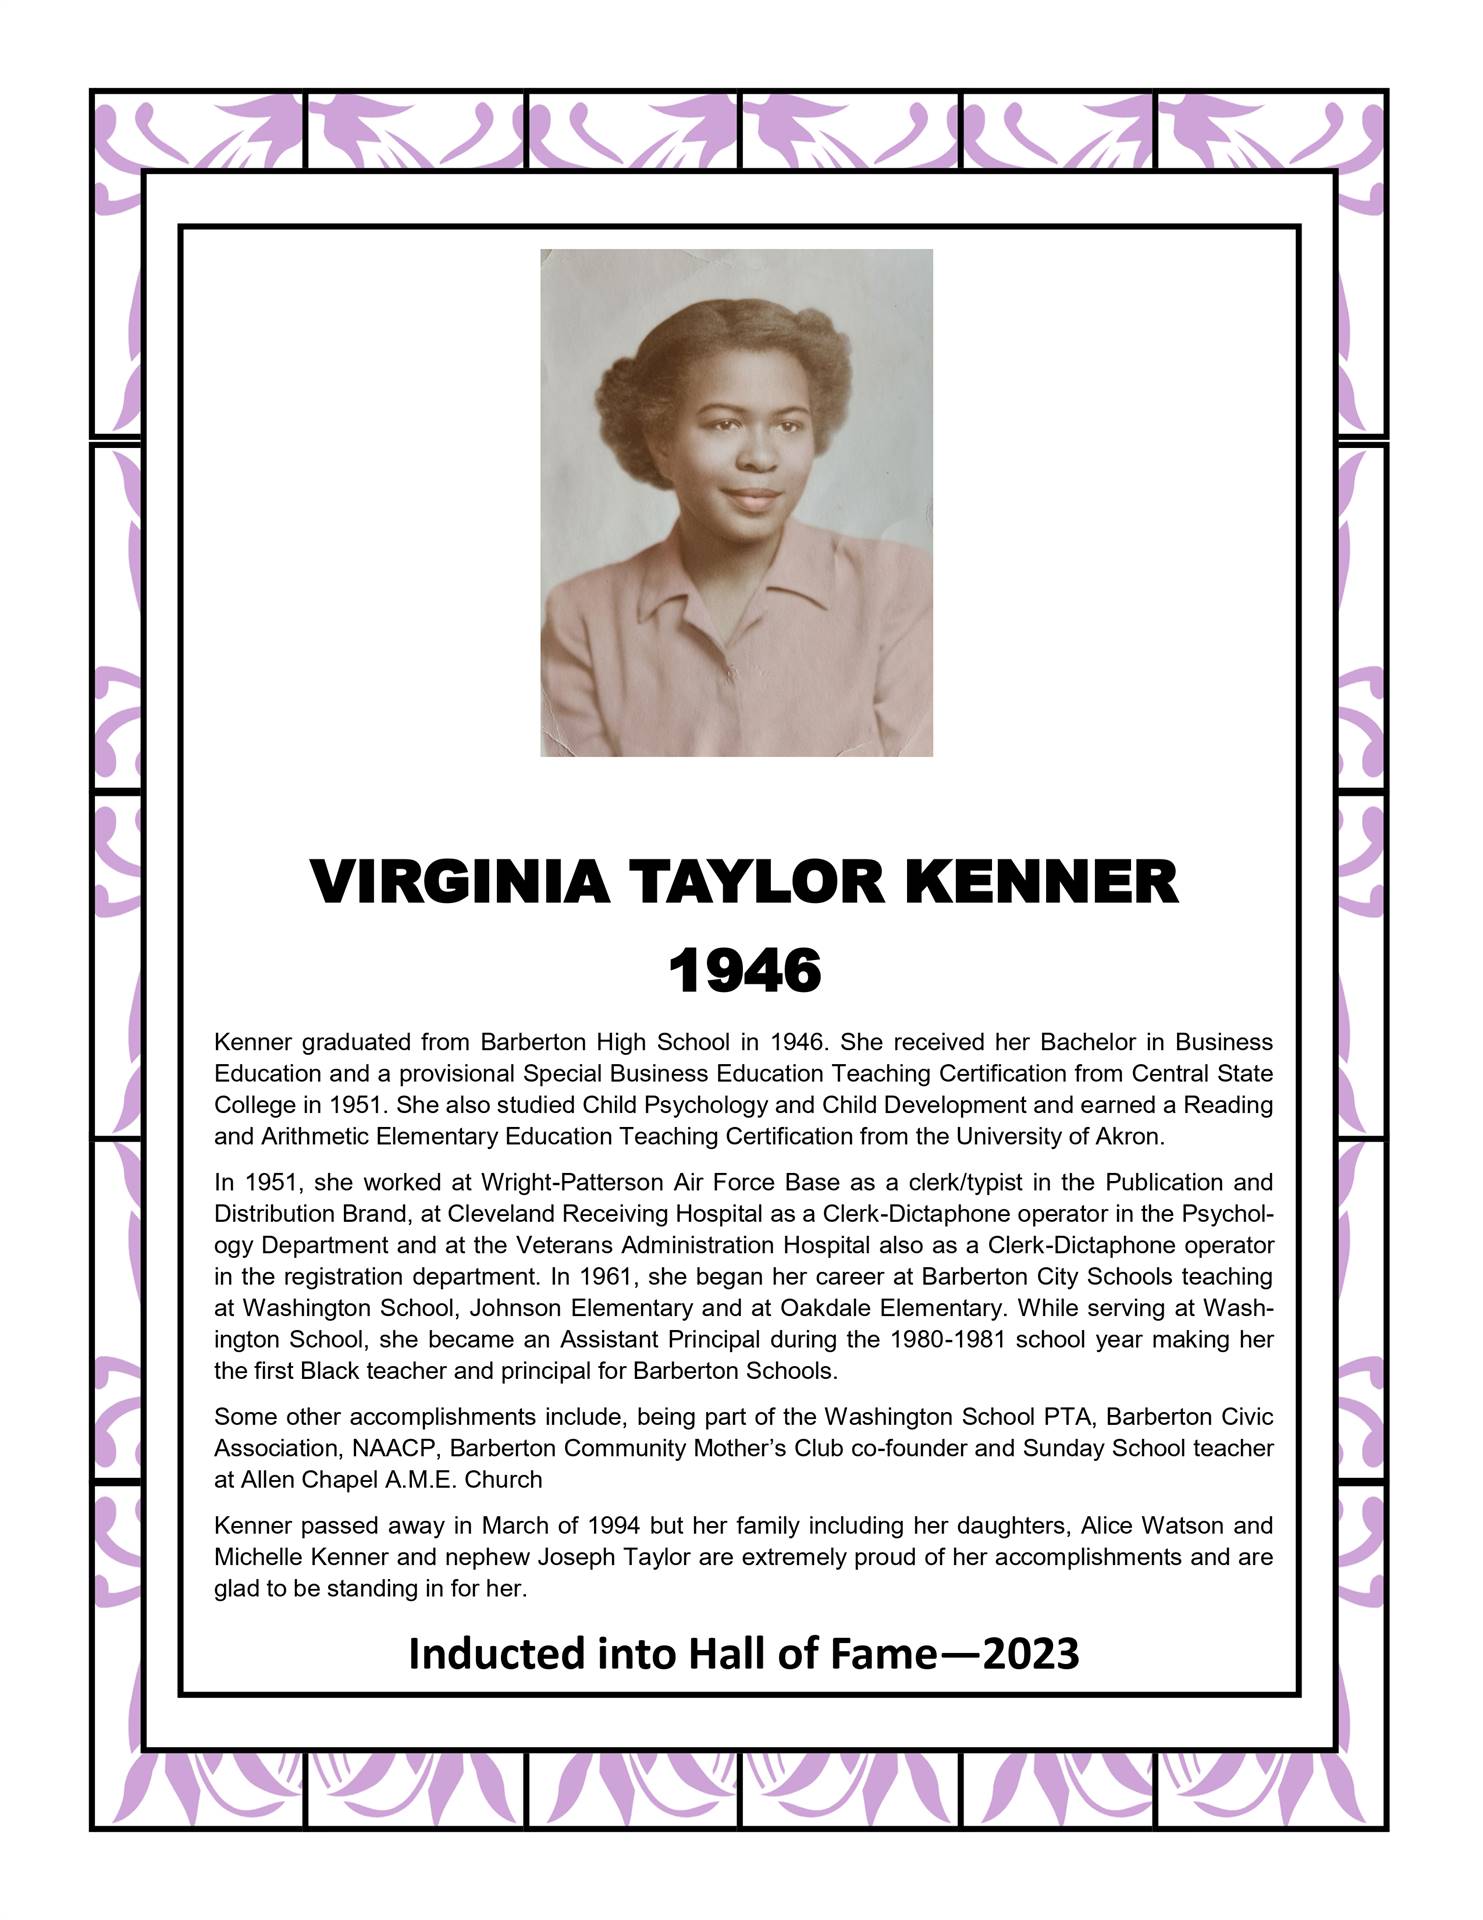 Virginia Taylor Kenner